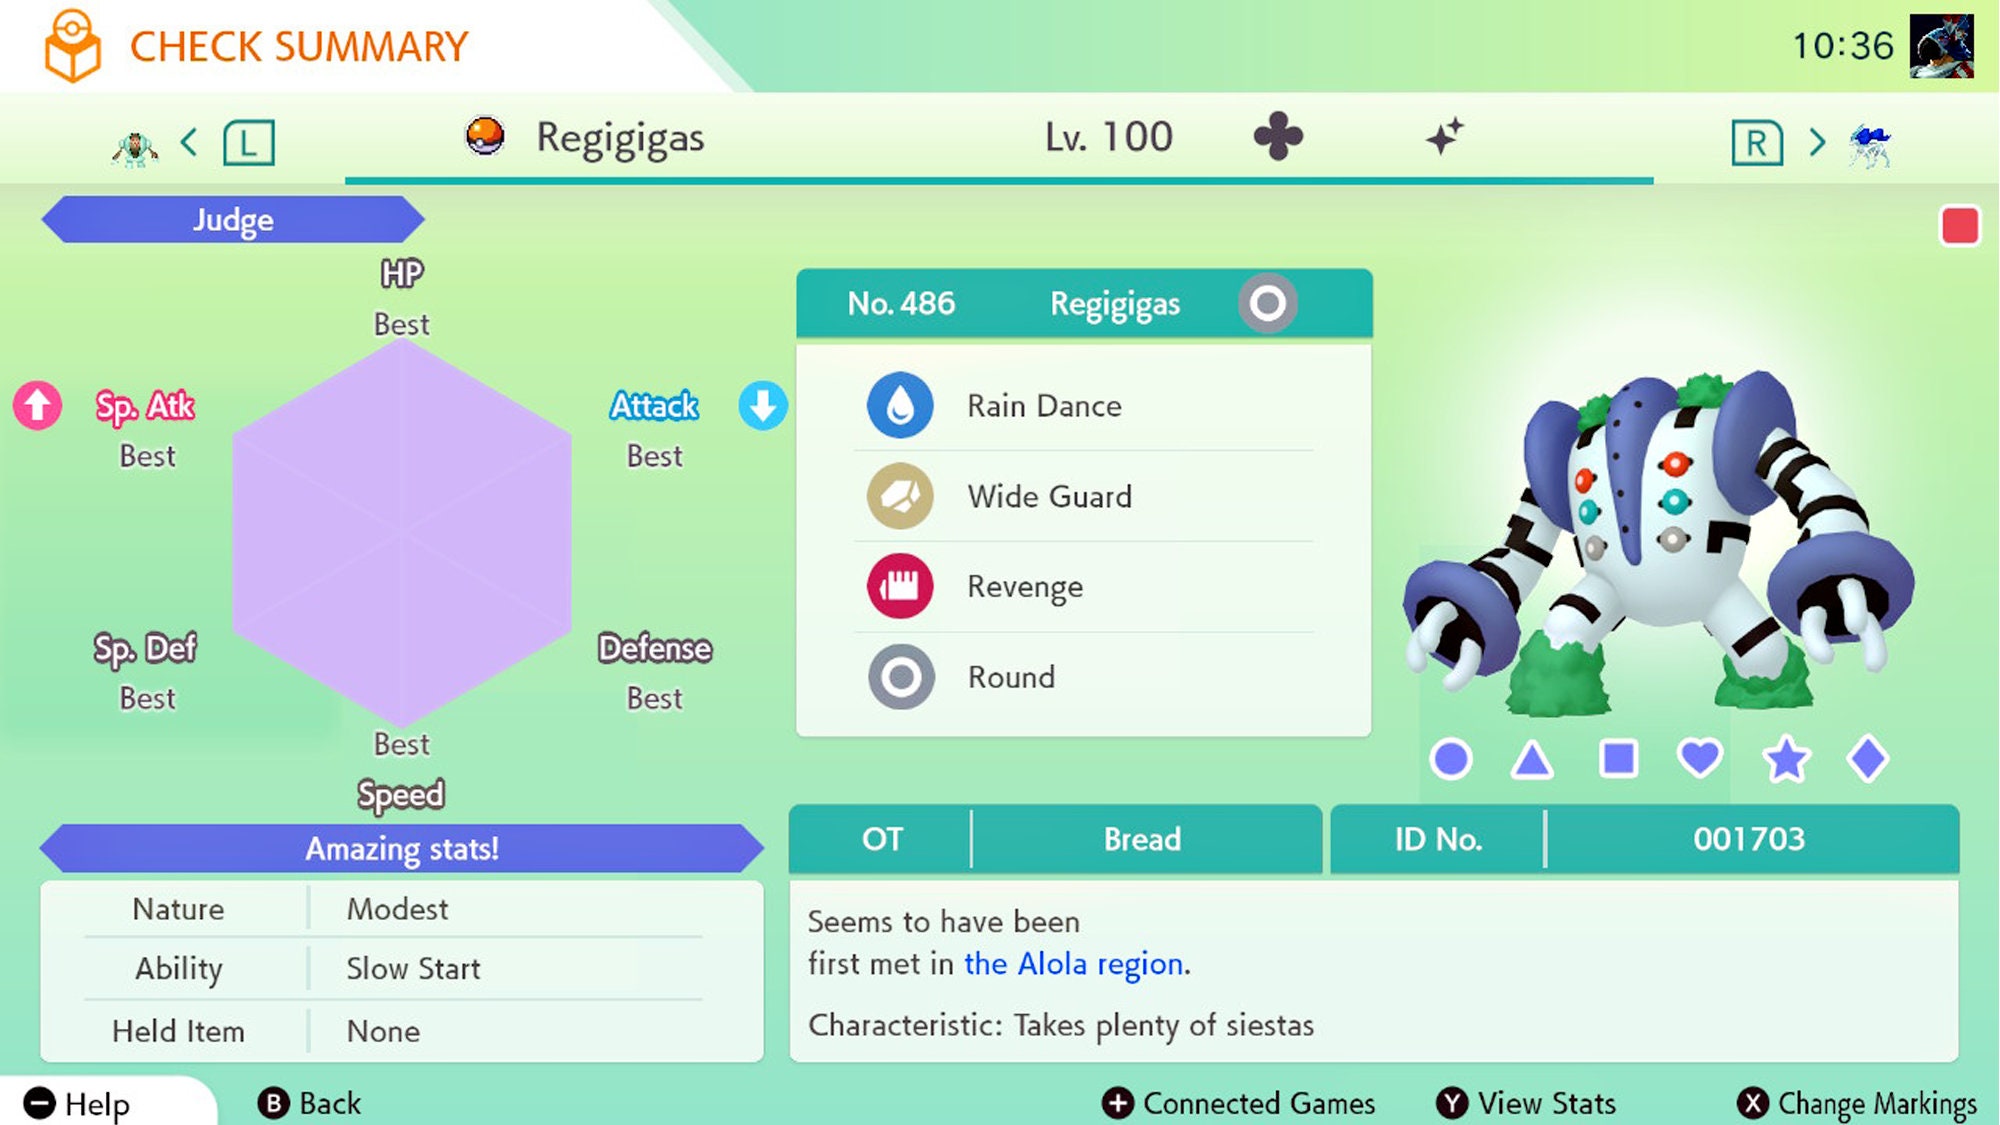 Pokémon GO - The Best Regigigas Counters, How to Get Shiny Regigigas